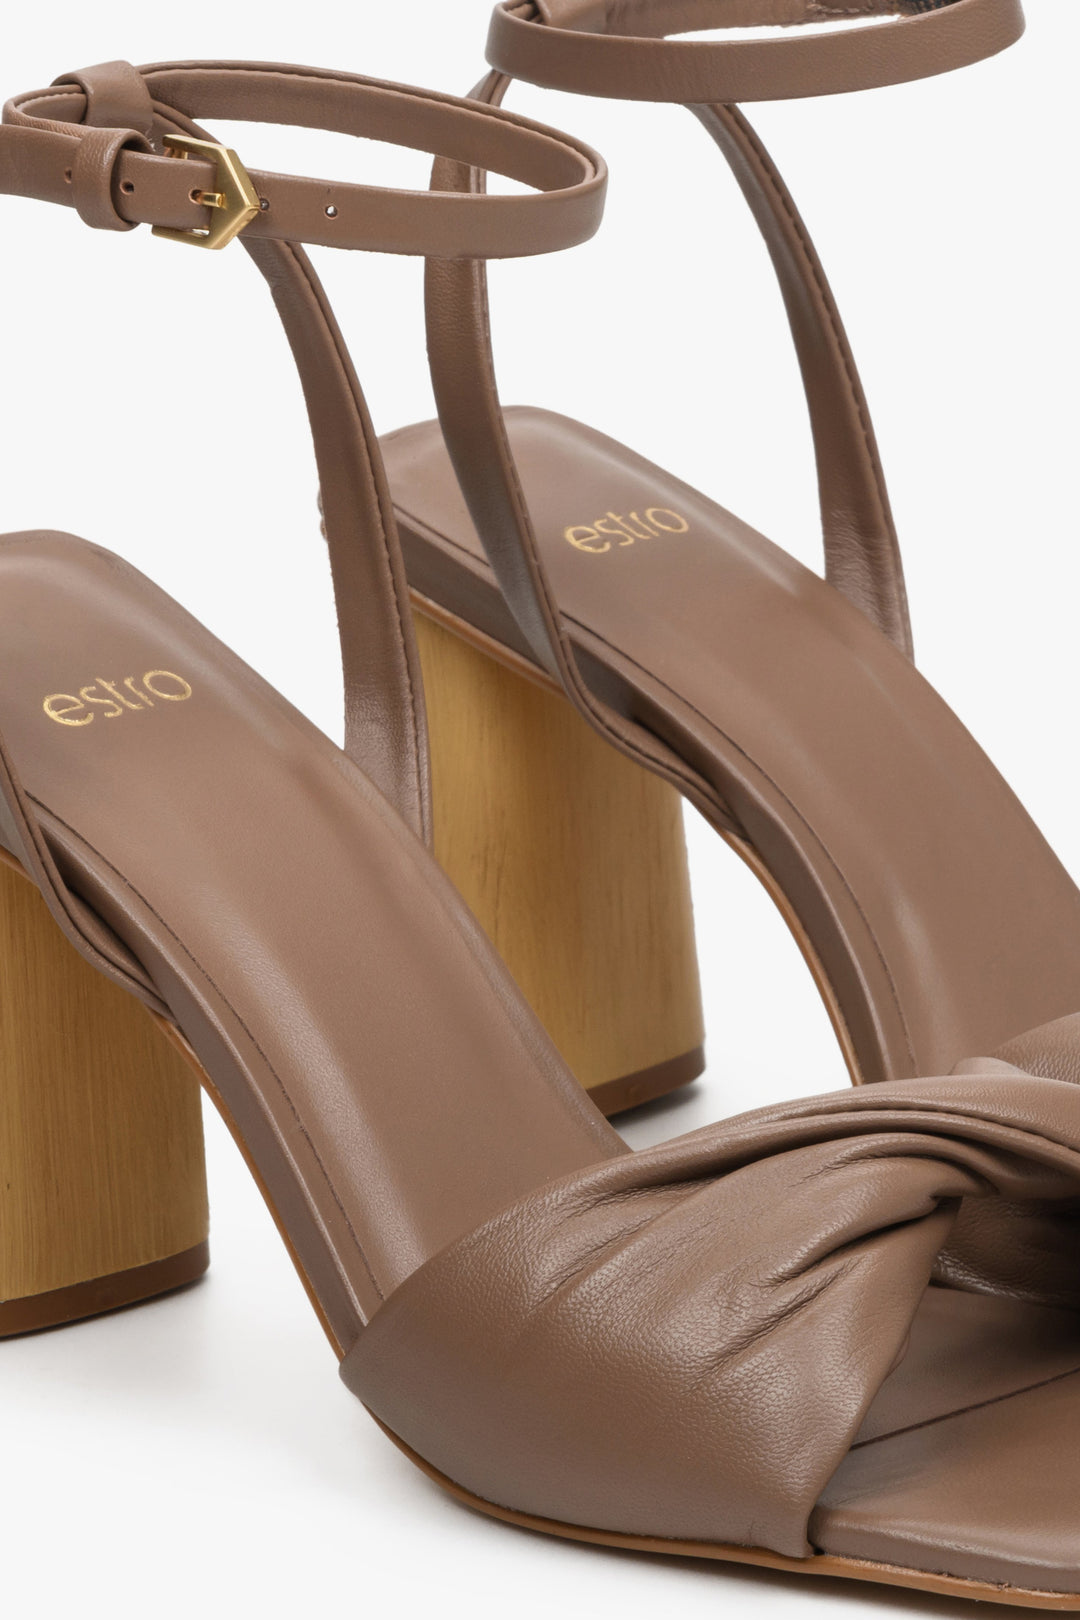 Skórzane sandały damskie na obcasie Estro w kolorze brązowym - zbliżenie na detale.